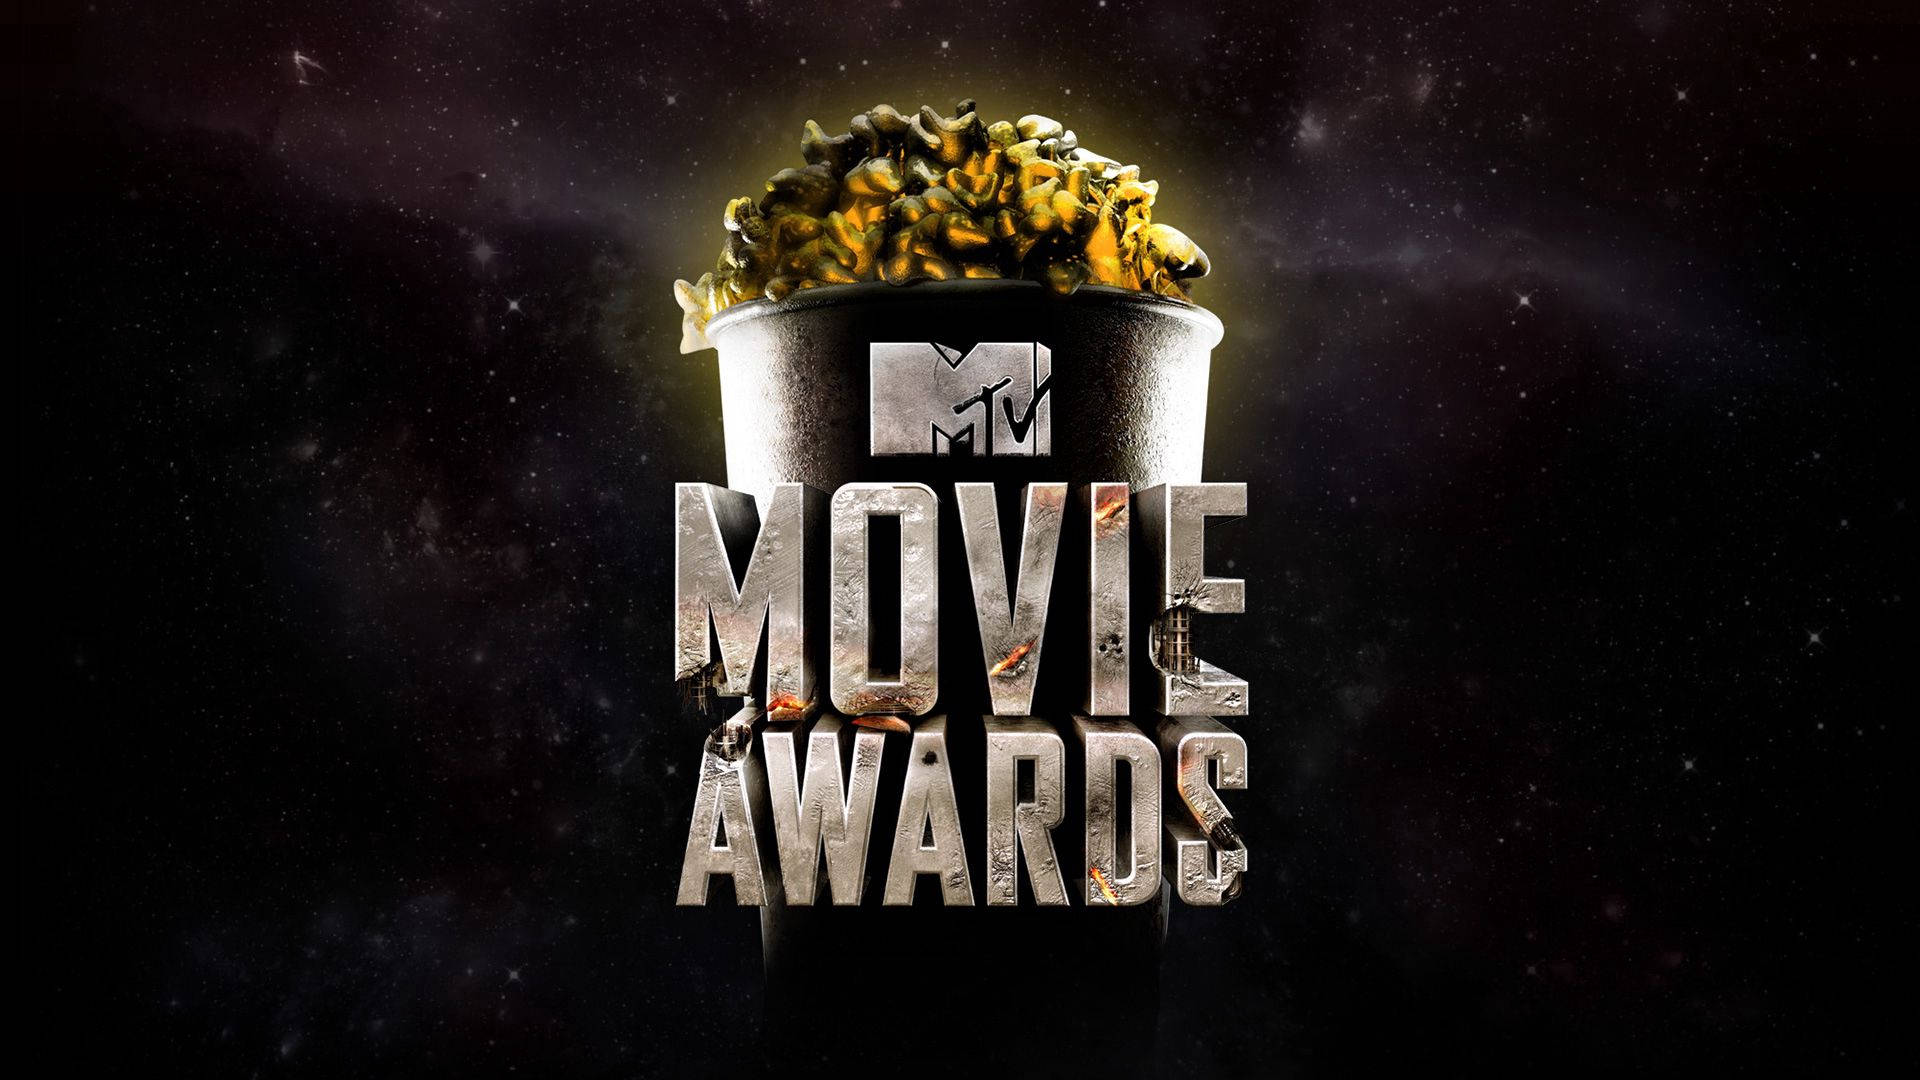 MTV Movie Awards Digital Cover wallpaper